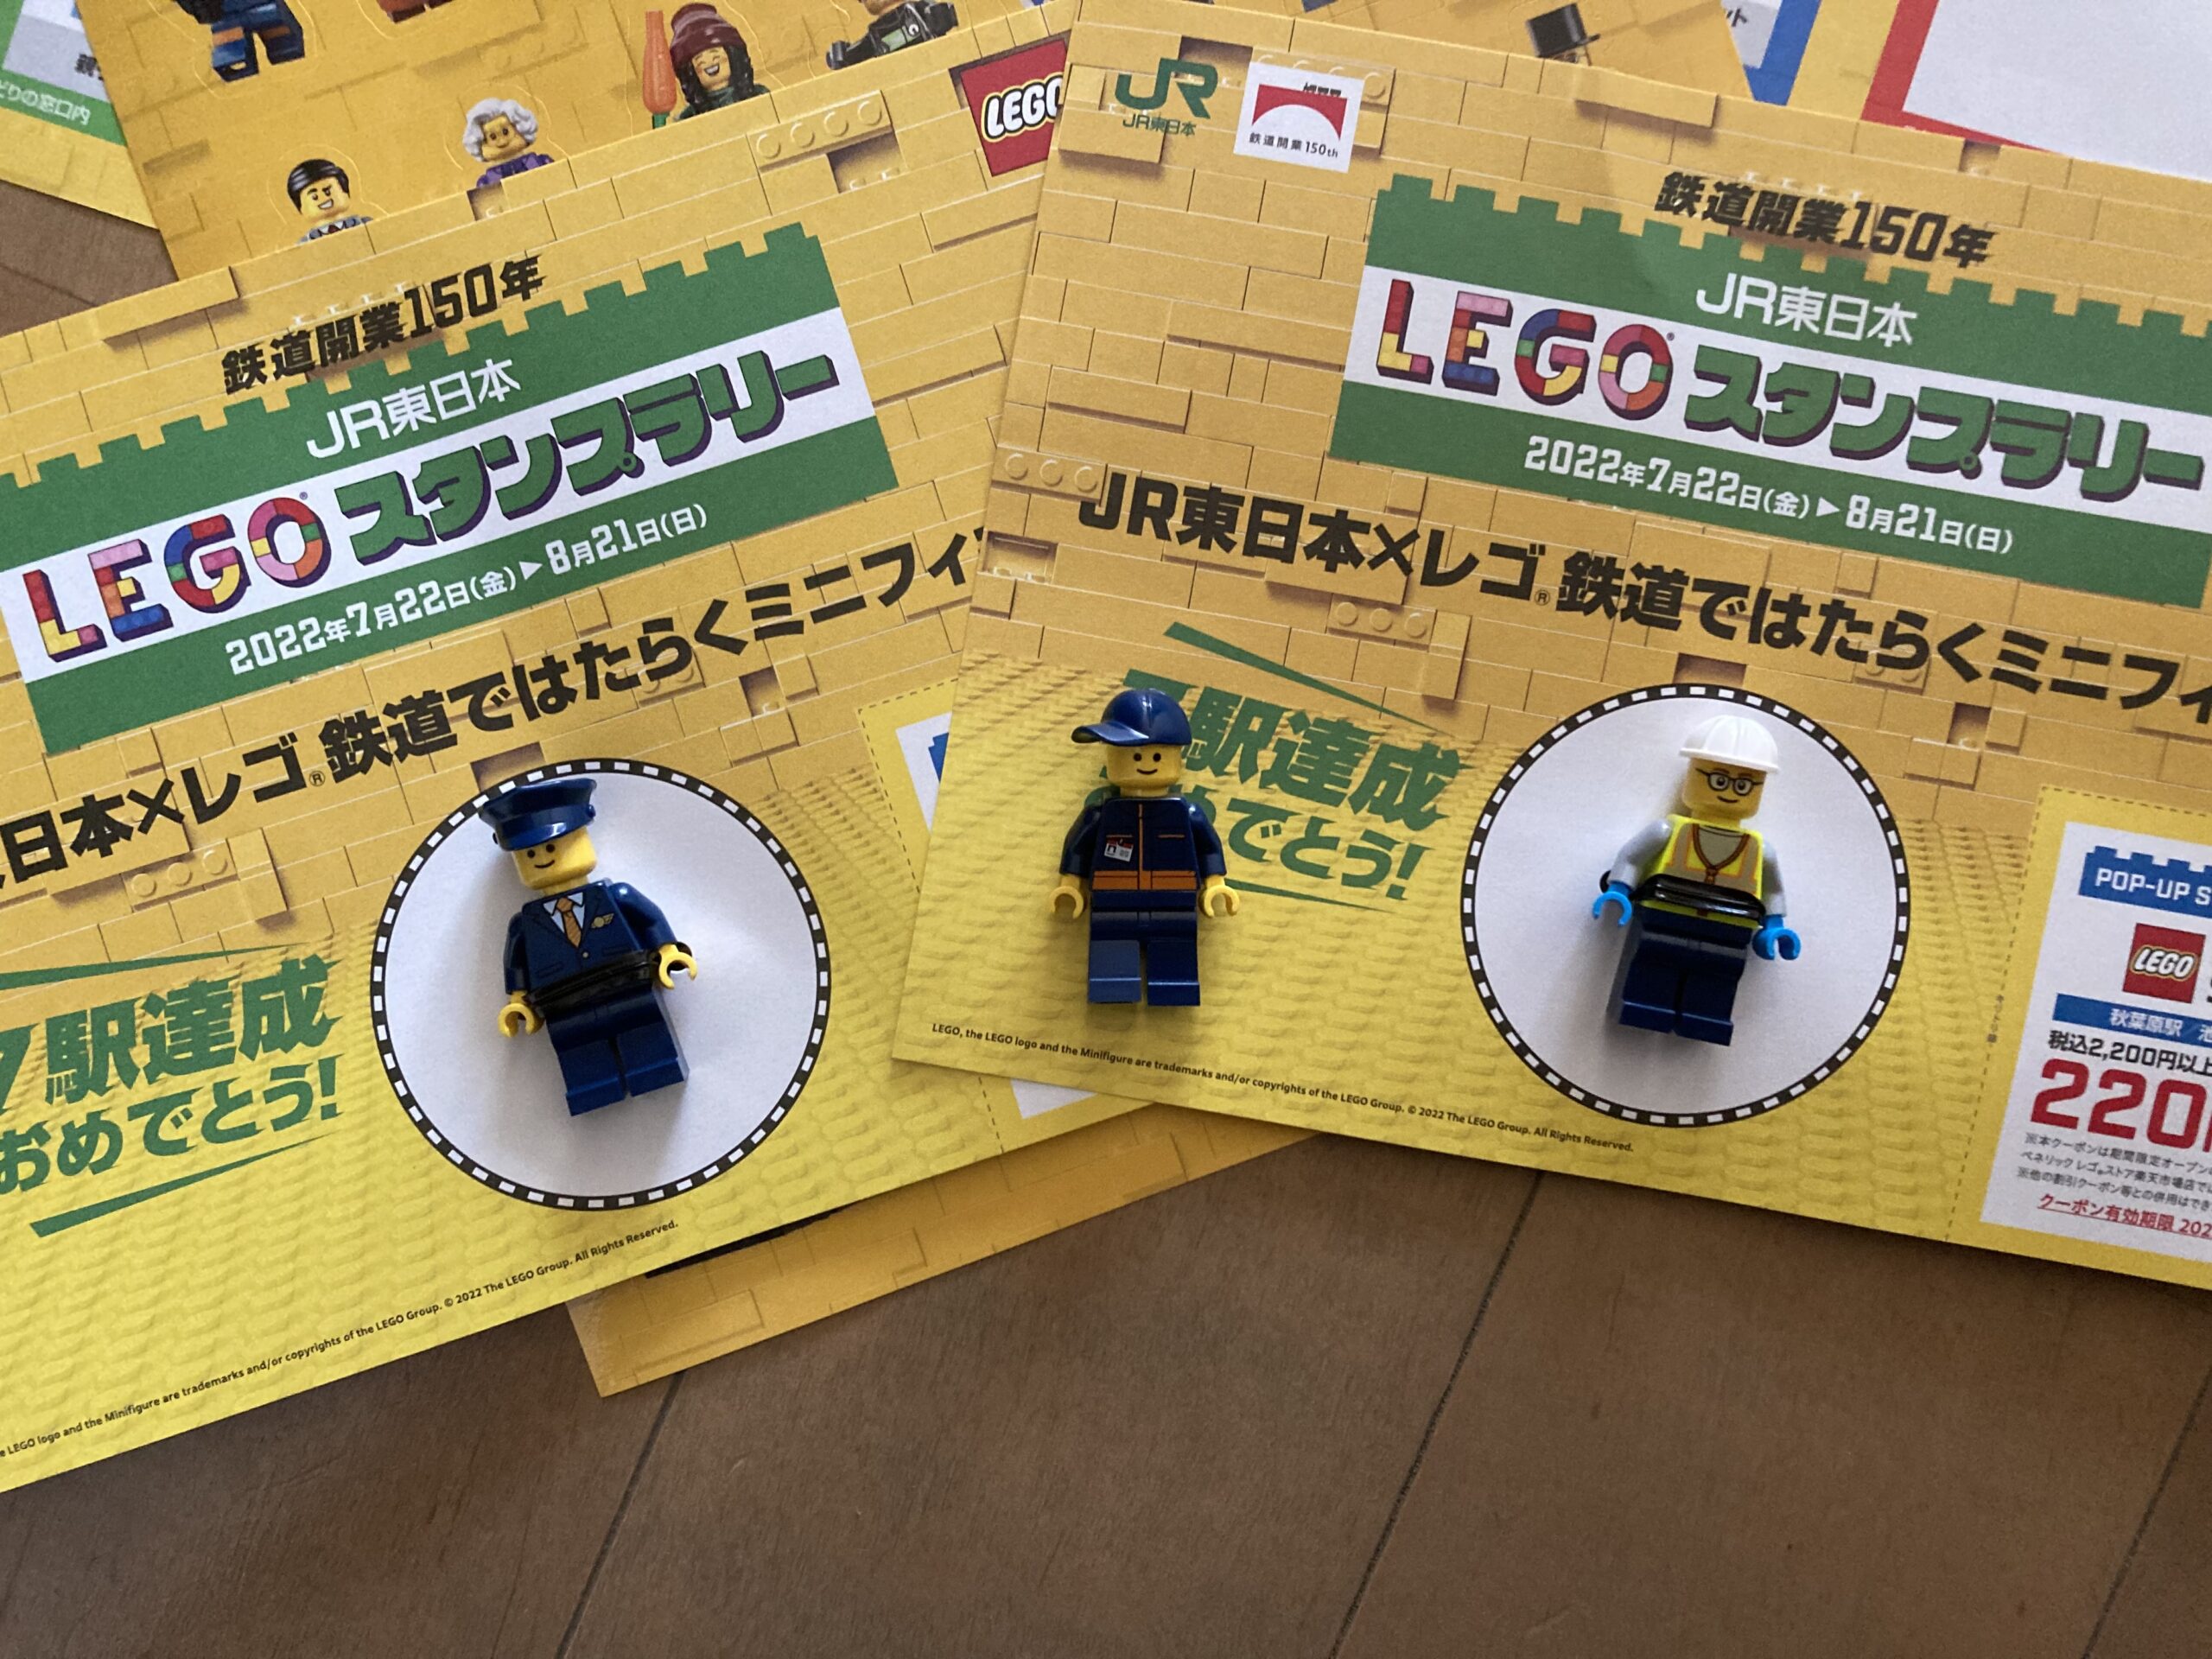 JR東日本 「LEGO®スタンプラリー」に参加して7駅コンプリートしてみた